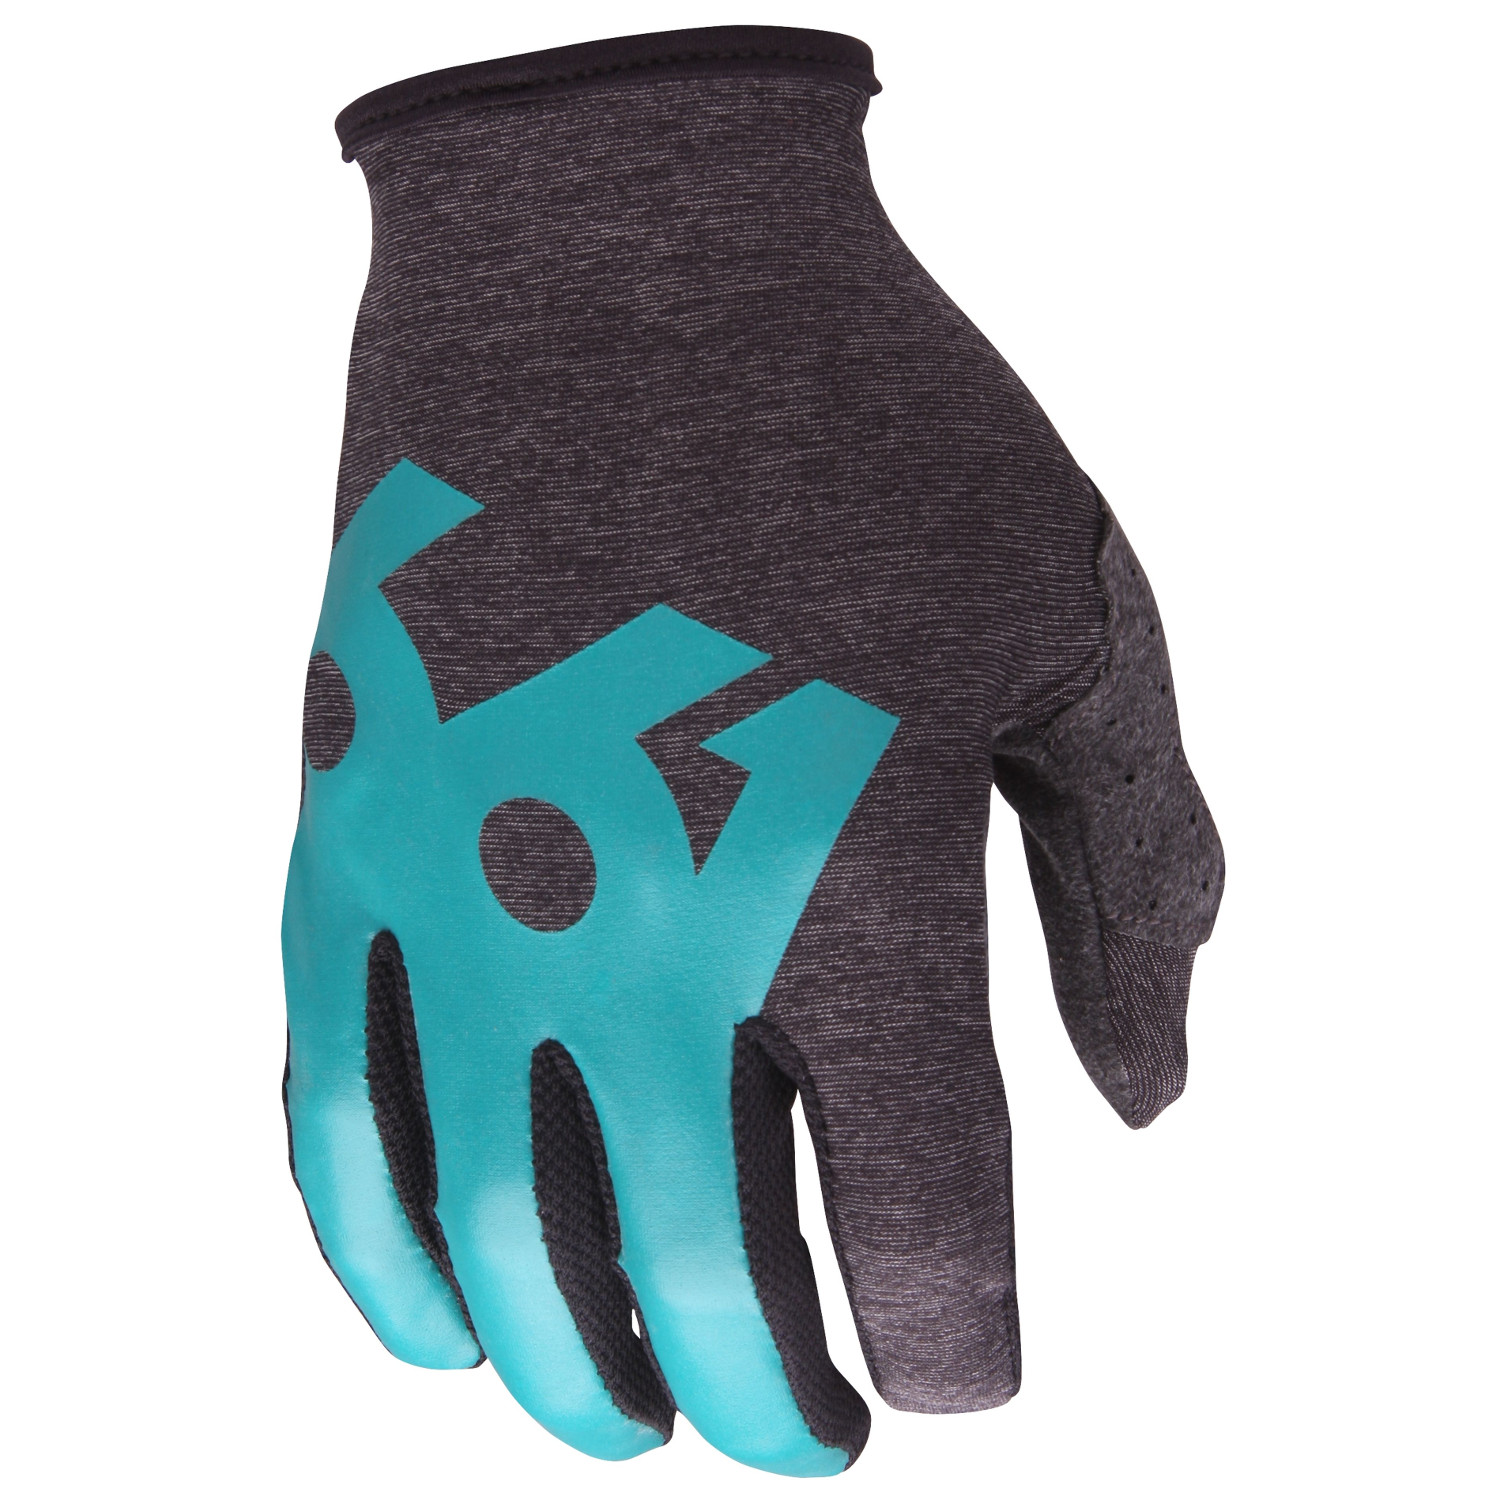 SixSixOne Bike Gloves Comp Air Teal